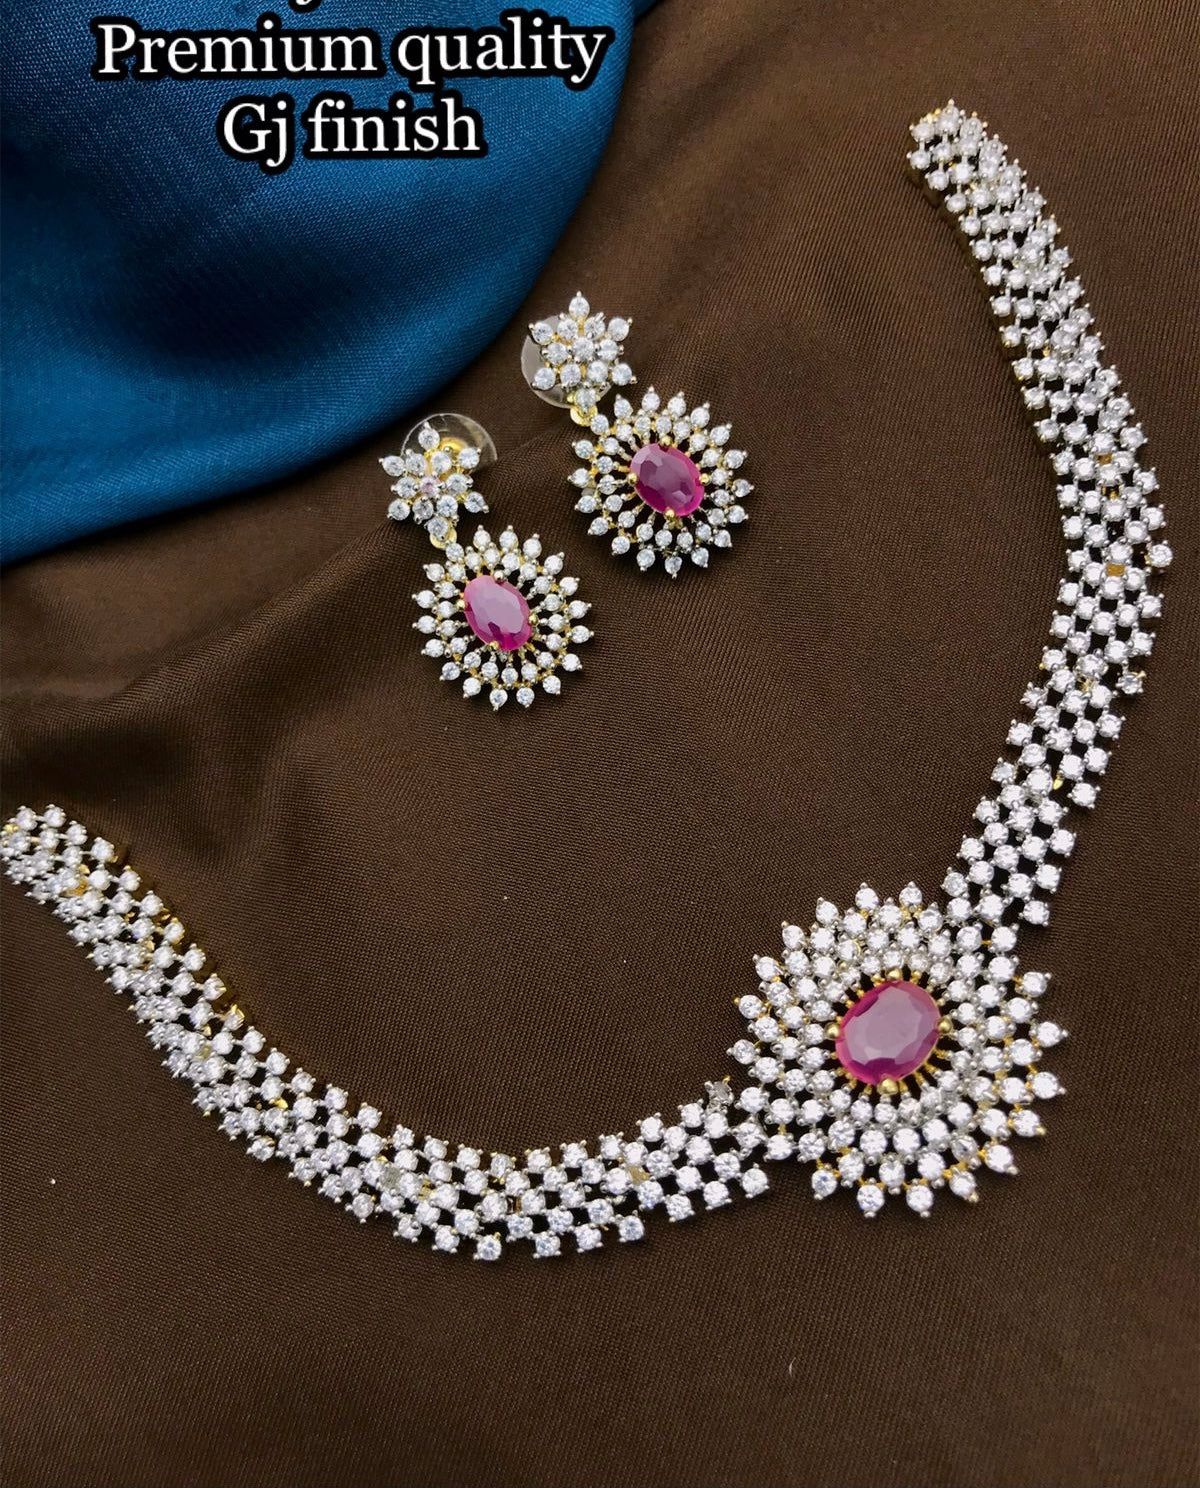 Stylish and Trendy Diamond Replica choker Necklace set - American Diamond Choker